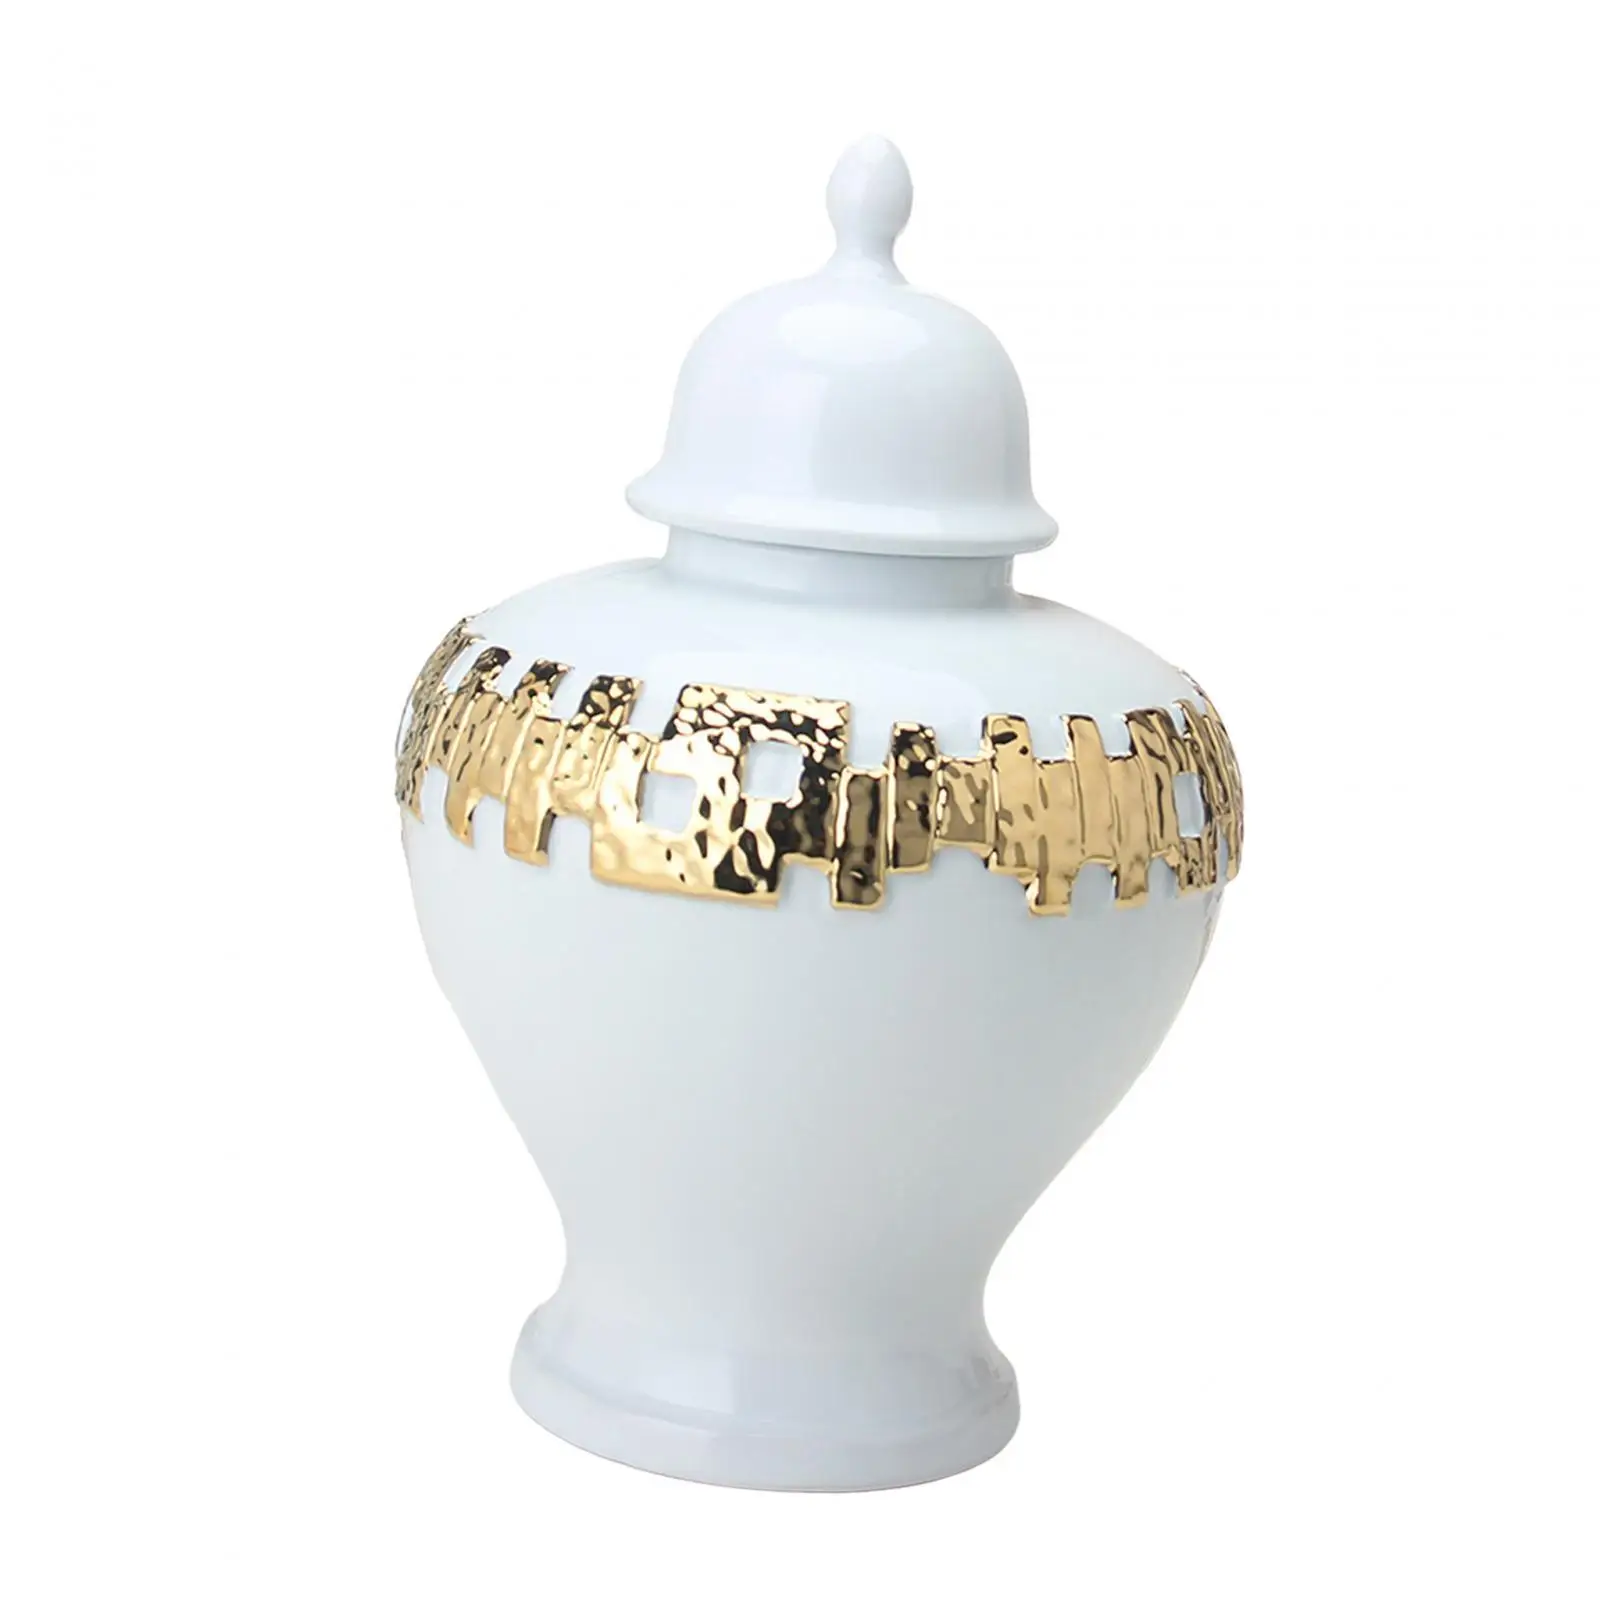 

Ceramic Flower Vase Temple Jar with Lid Display Ornament Porcelain Ginger Jars for Desktop Living Room Housewarming Dining Room